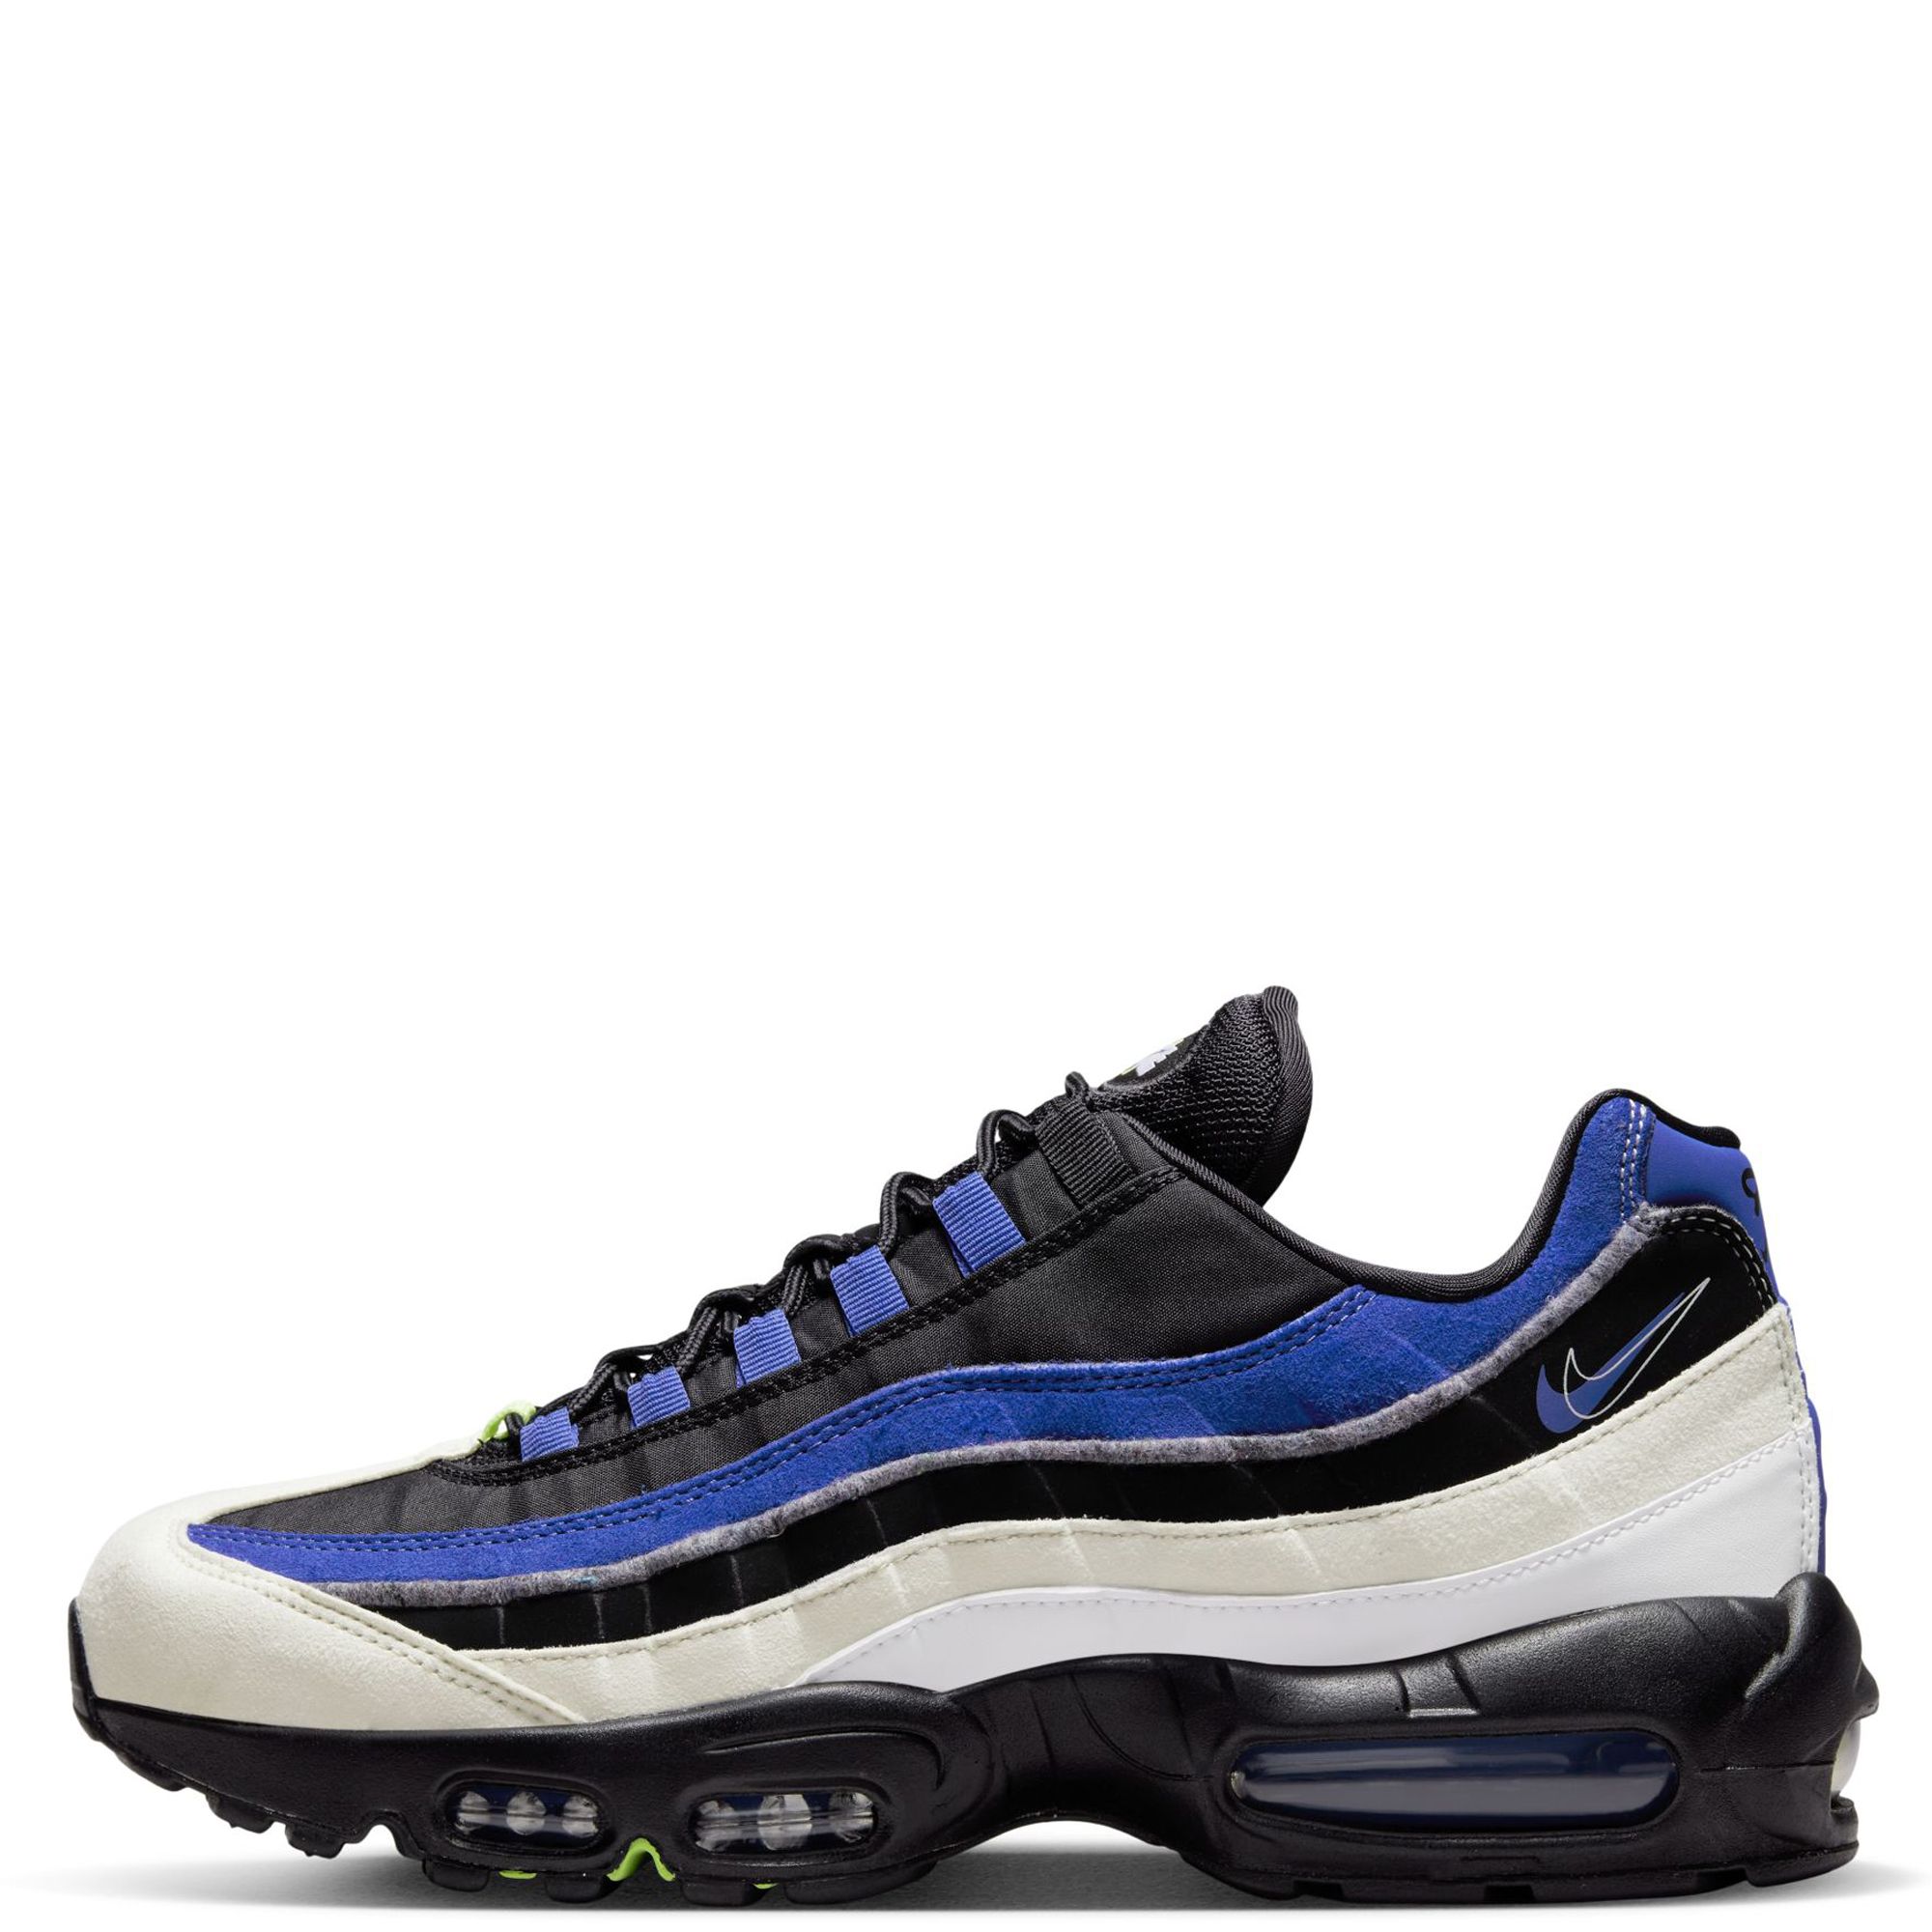 Chaussures Nike Air Max 95 Se pour Homme - DQ0268-001 - Bleu